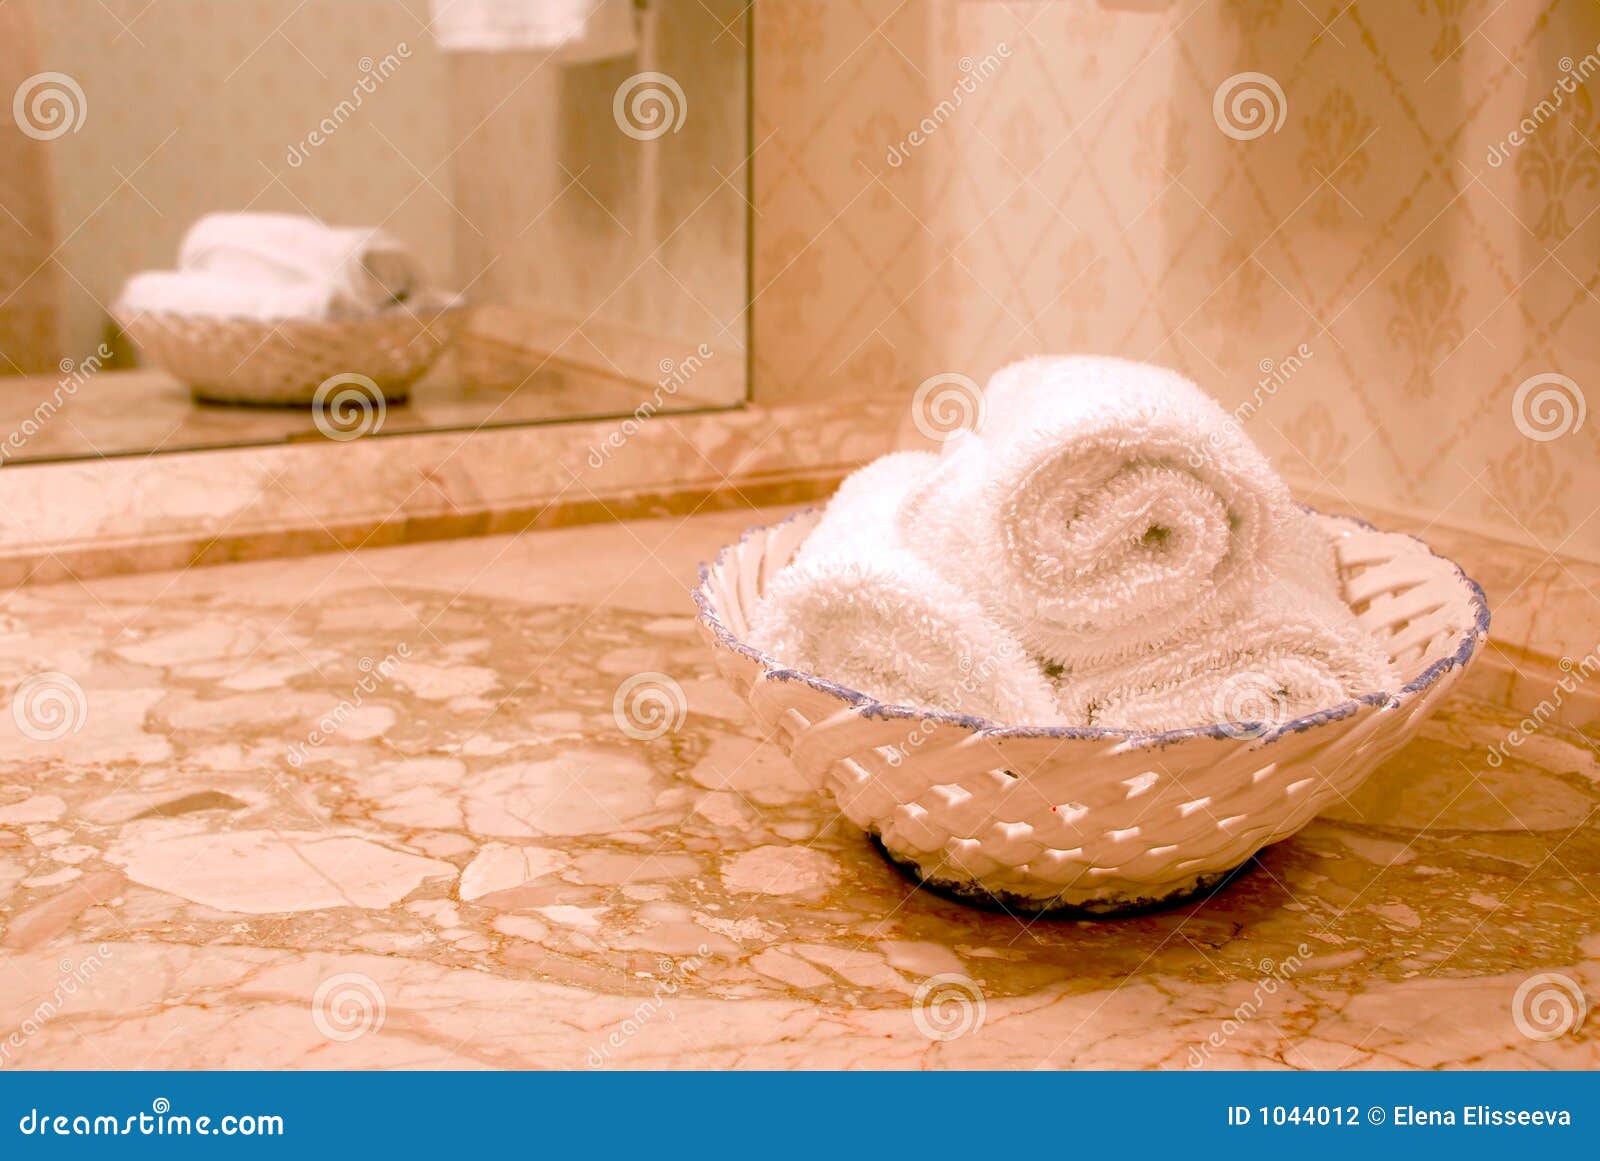 Ванна полотенце картина. Полотенце роскошь. Ванна фон полотенца. Полотенца на столе в ванной. Ванна раковина полотенце.